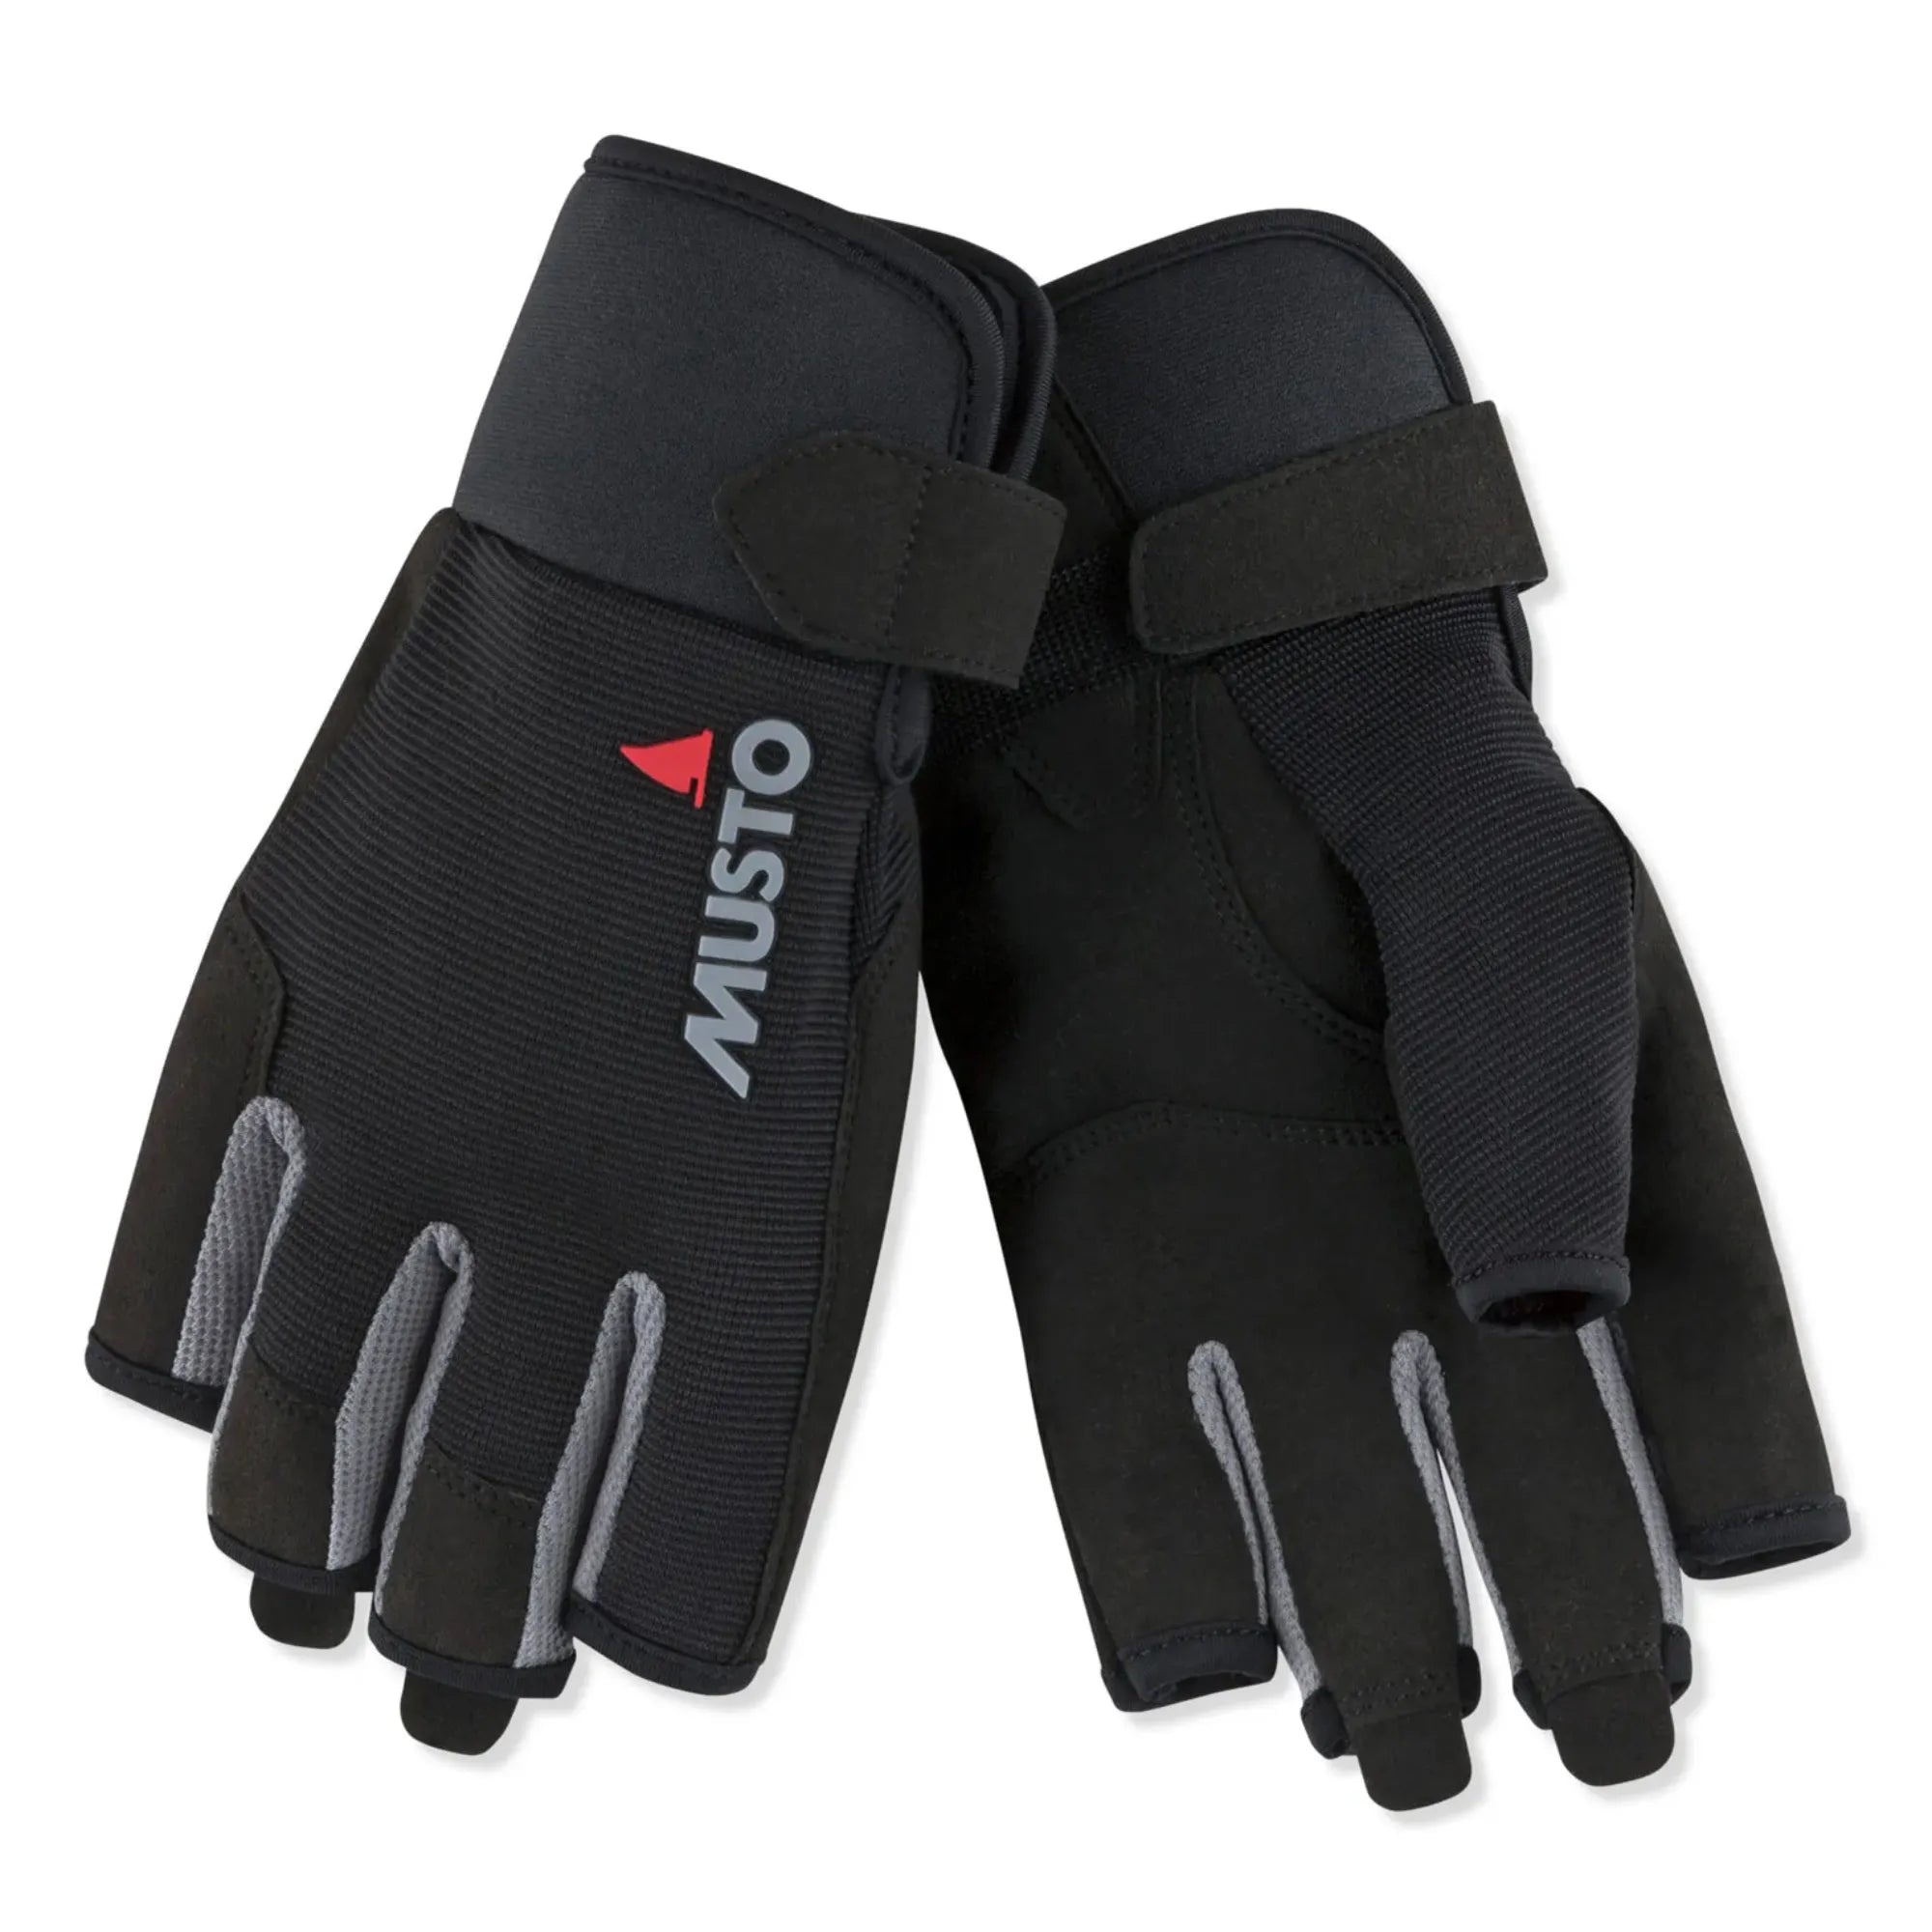 Essential Sailing Short Finger Glove - Black